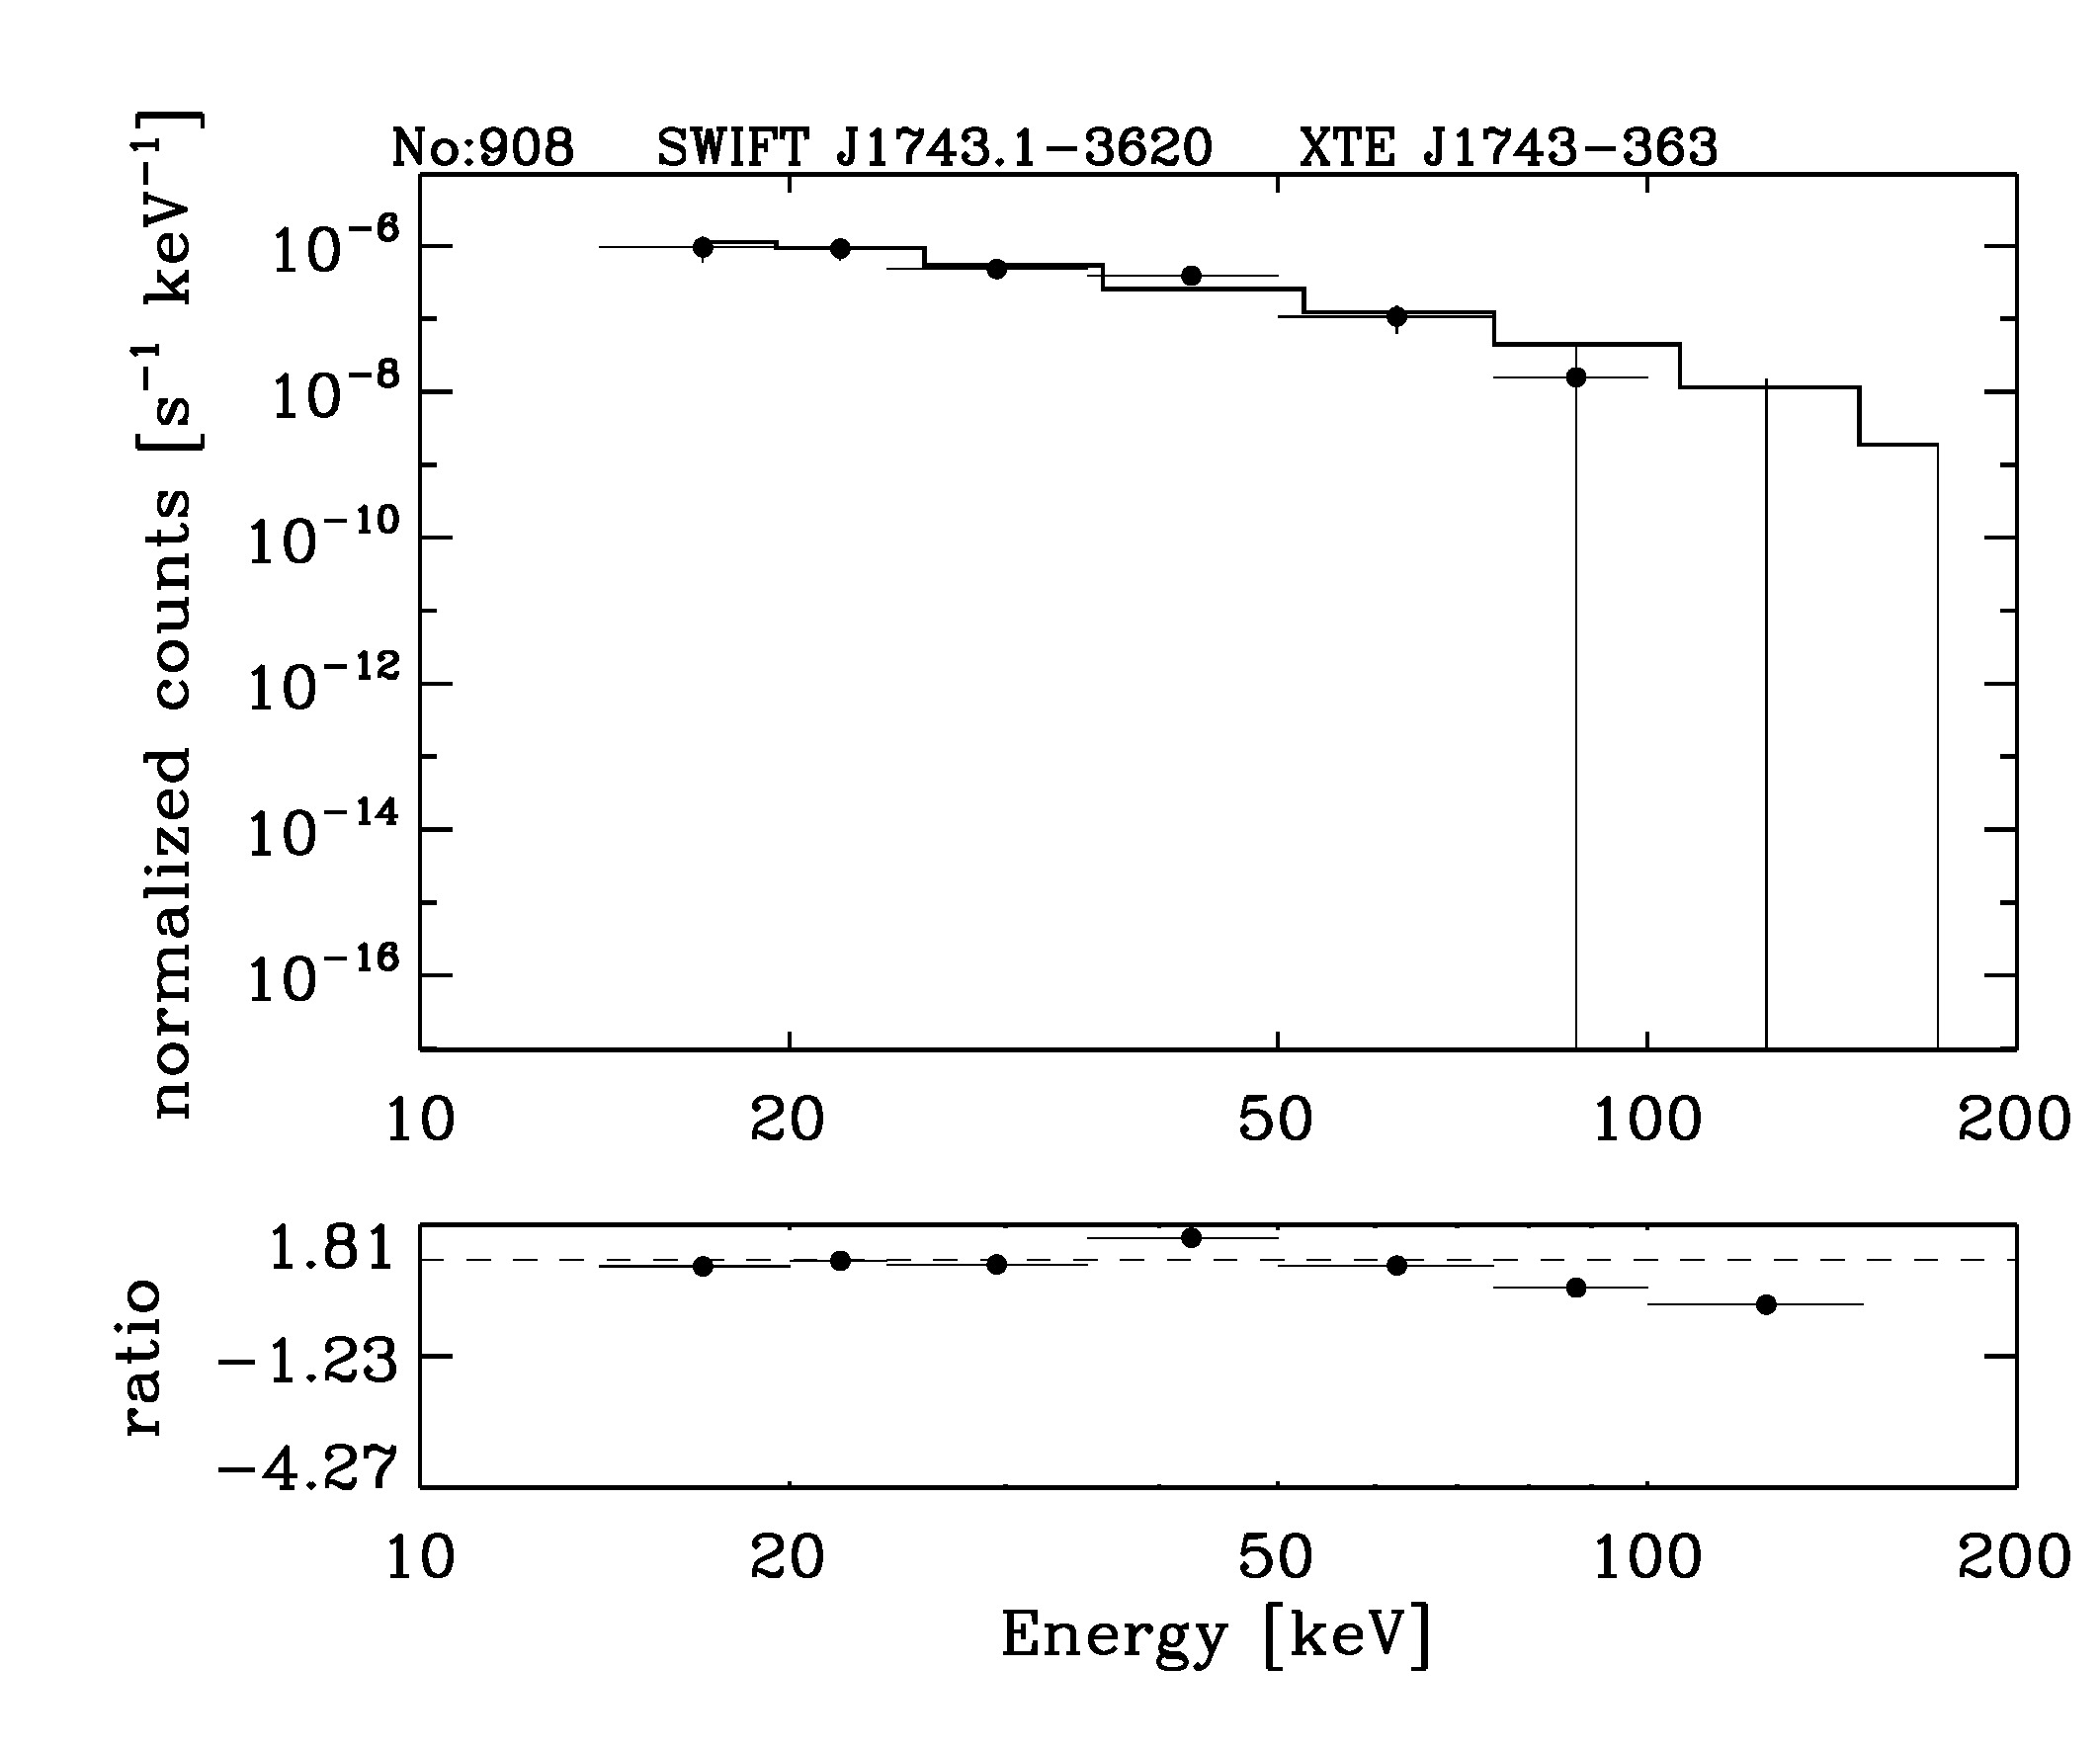 BAT Spectrum for SWIFT J1743.1-3620